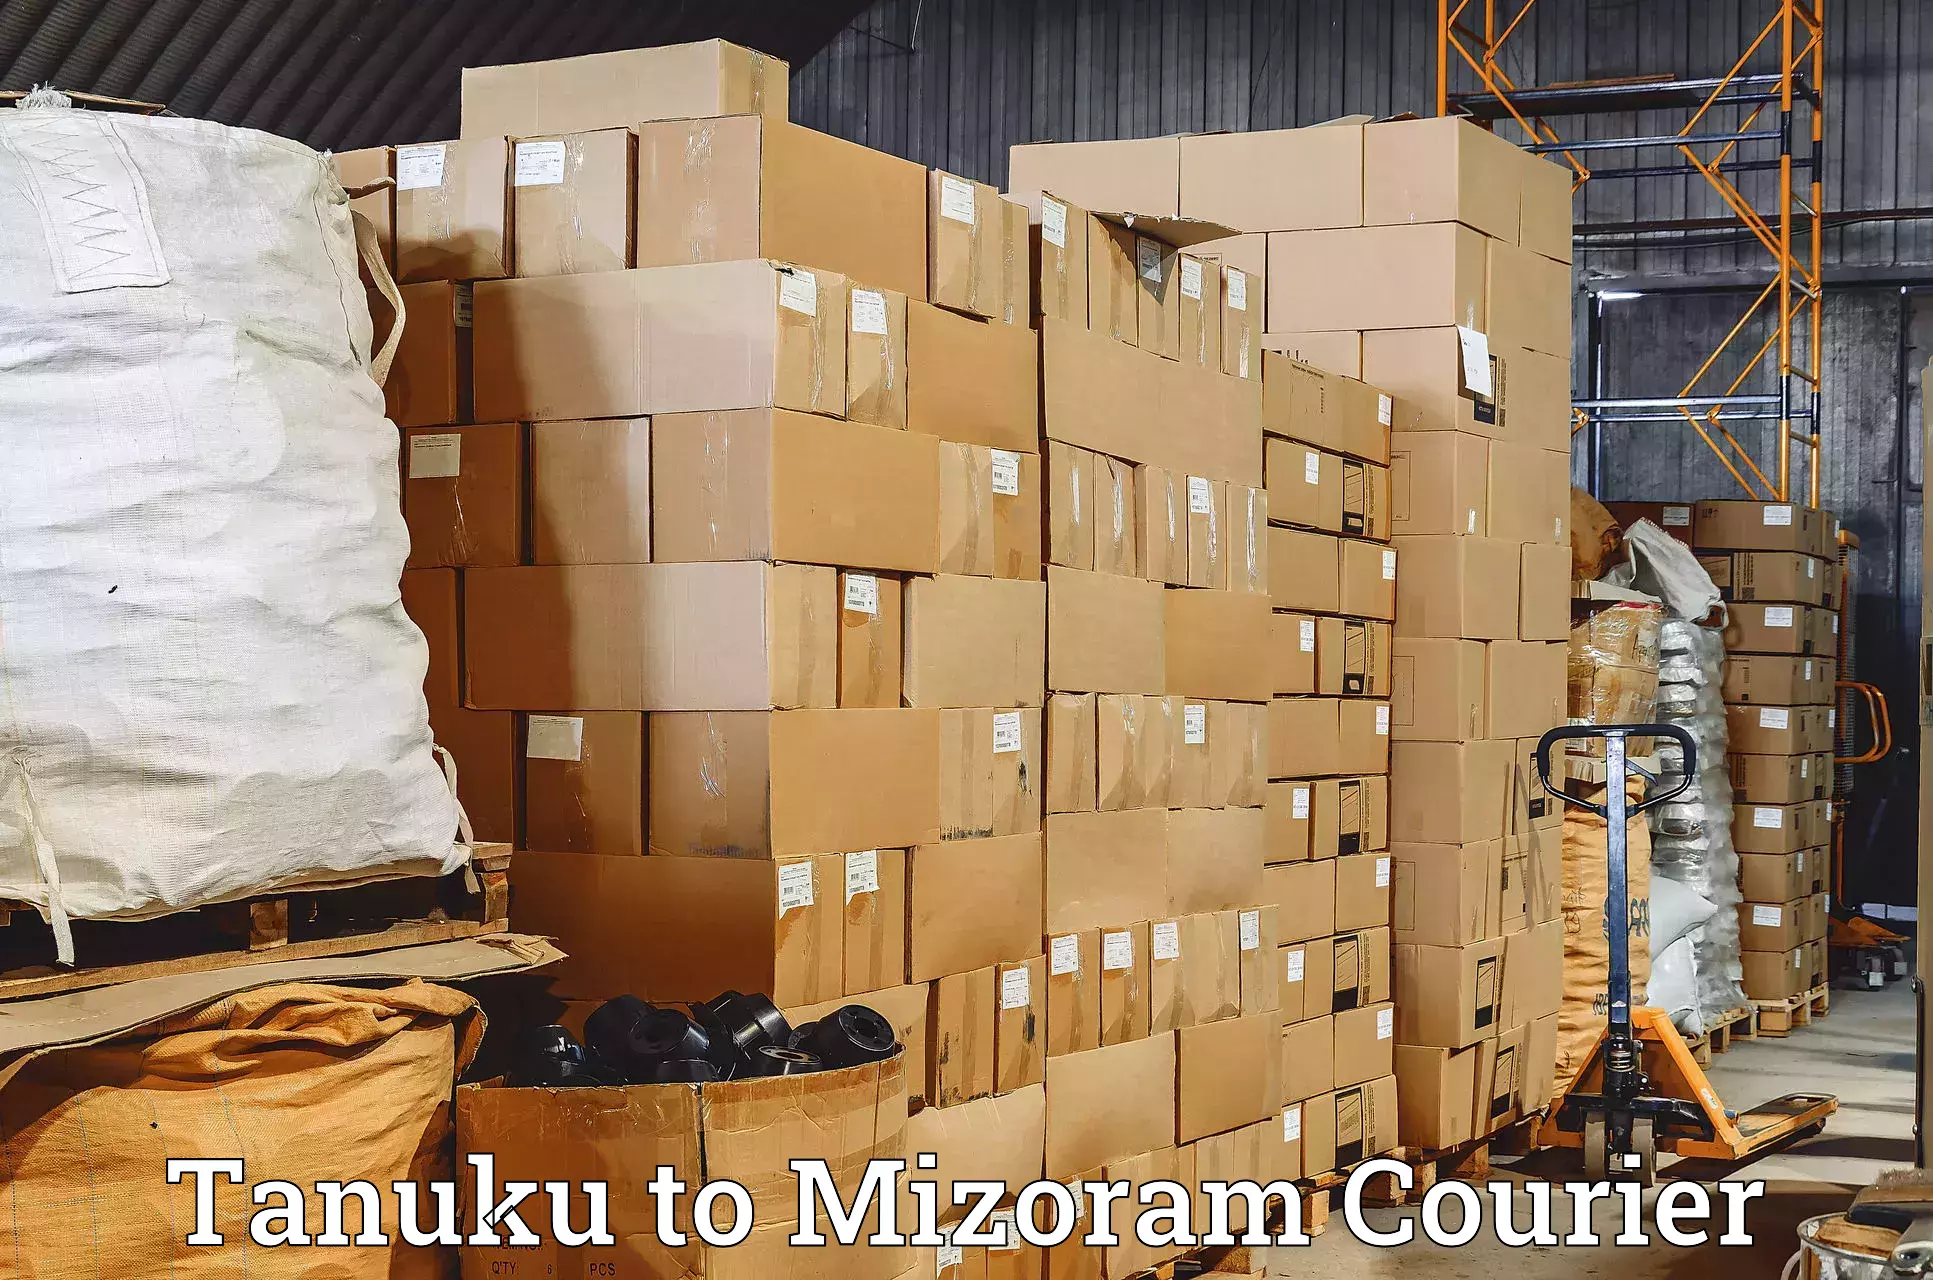 Express courier facilities Tanuku to Mizoram